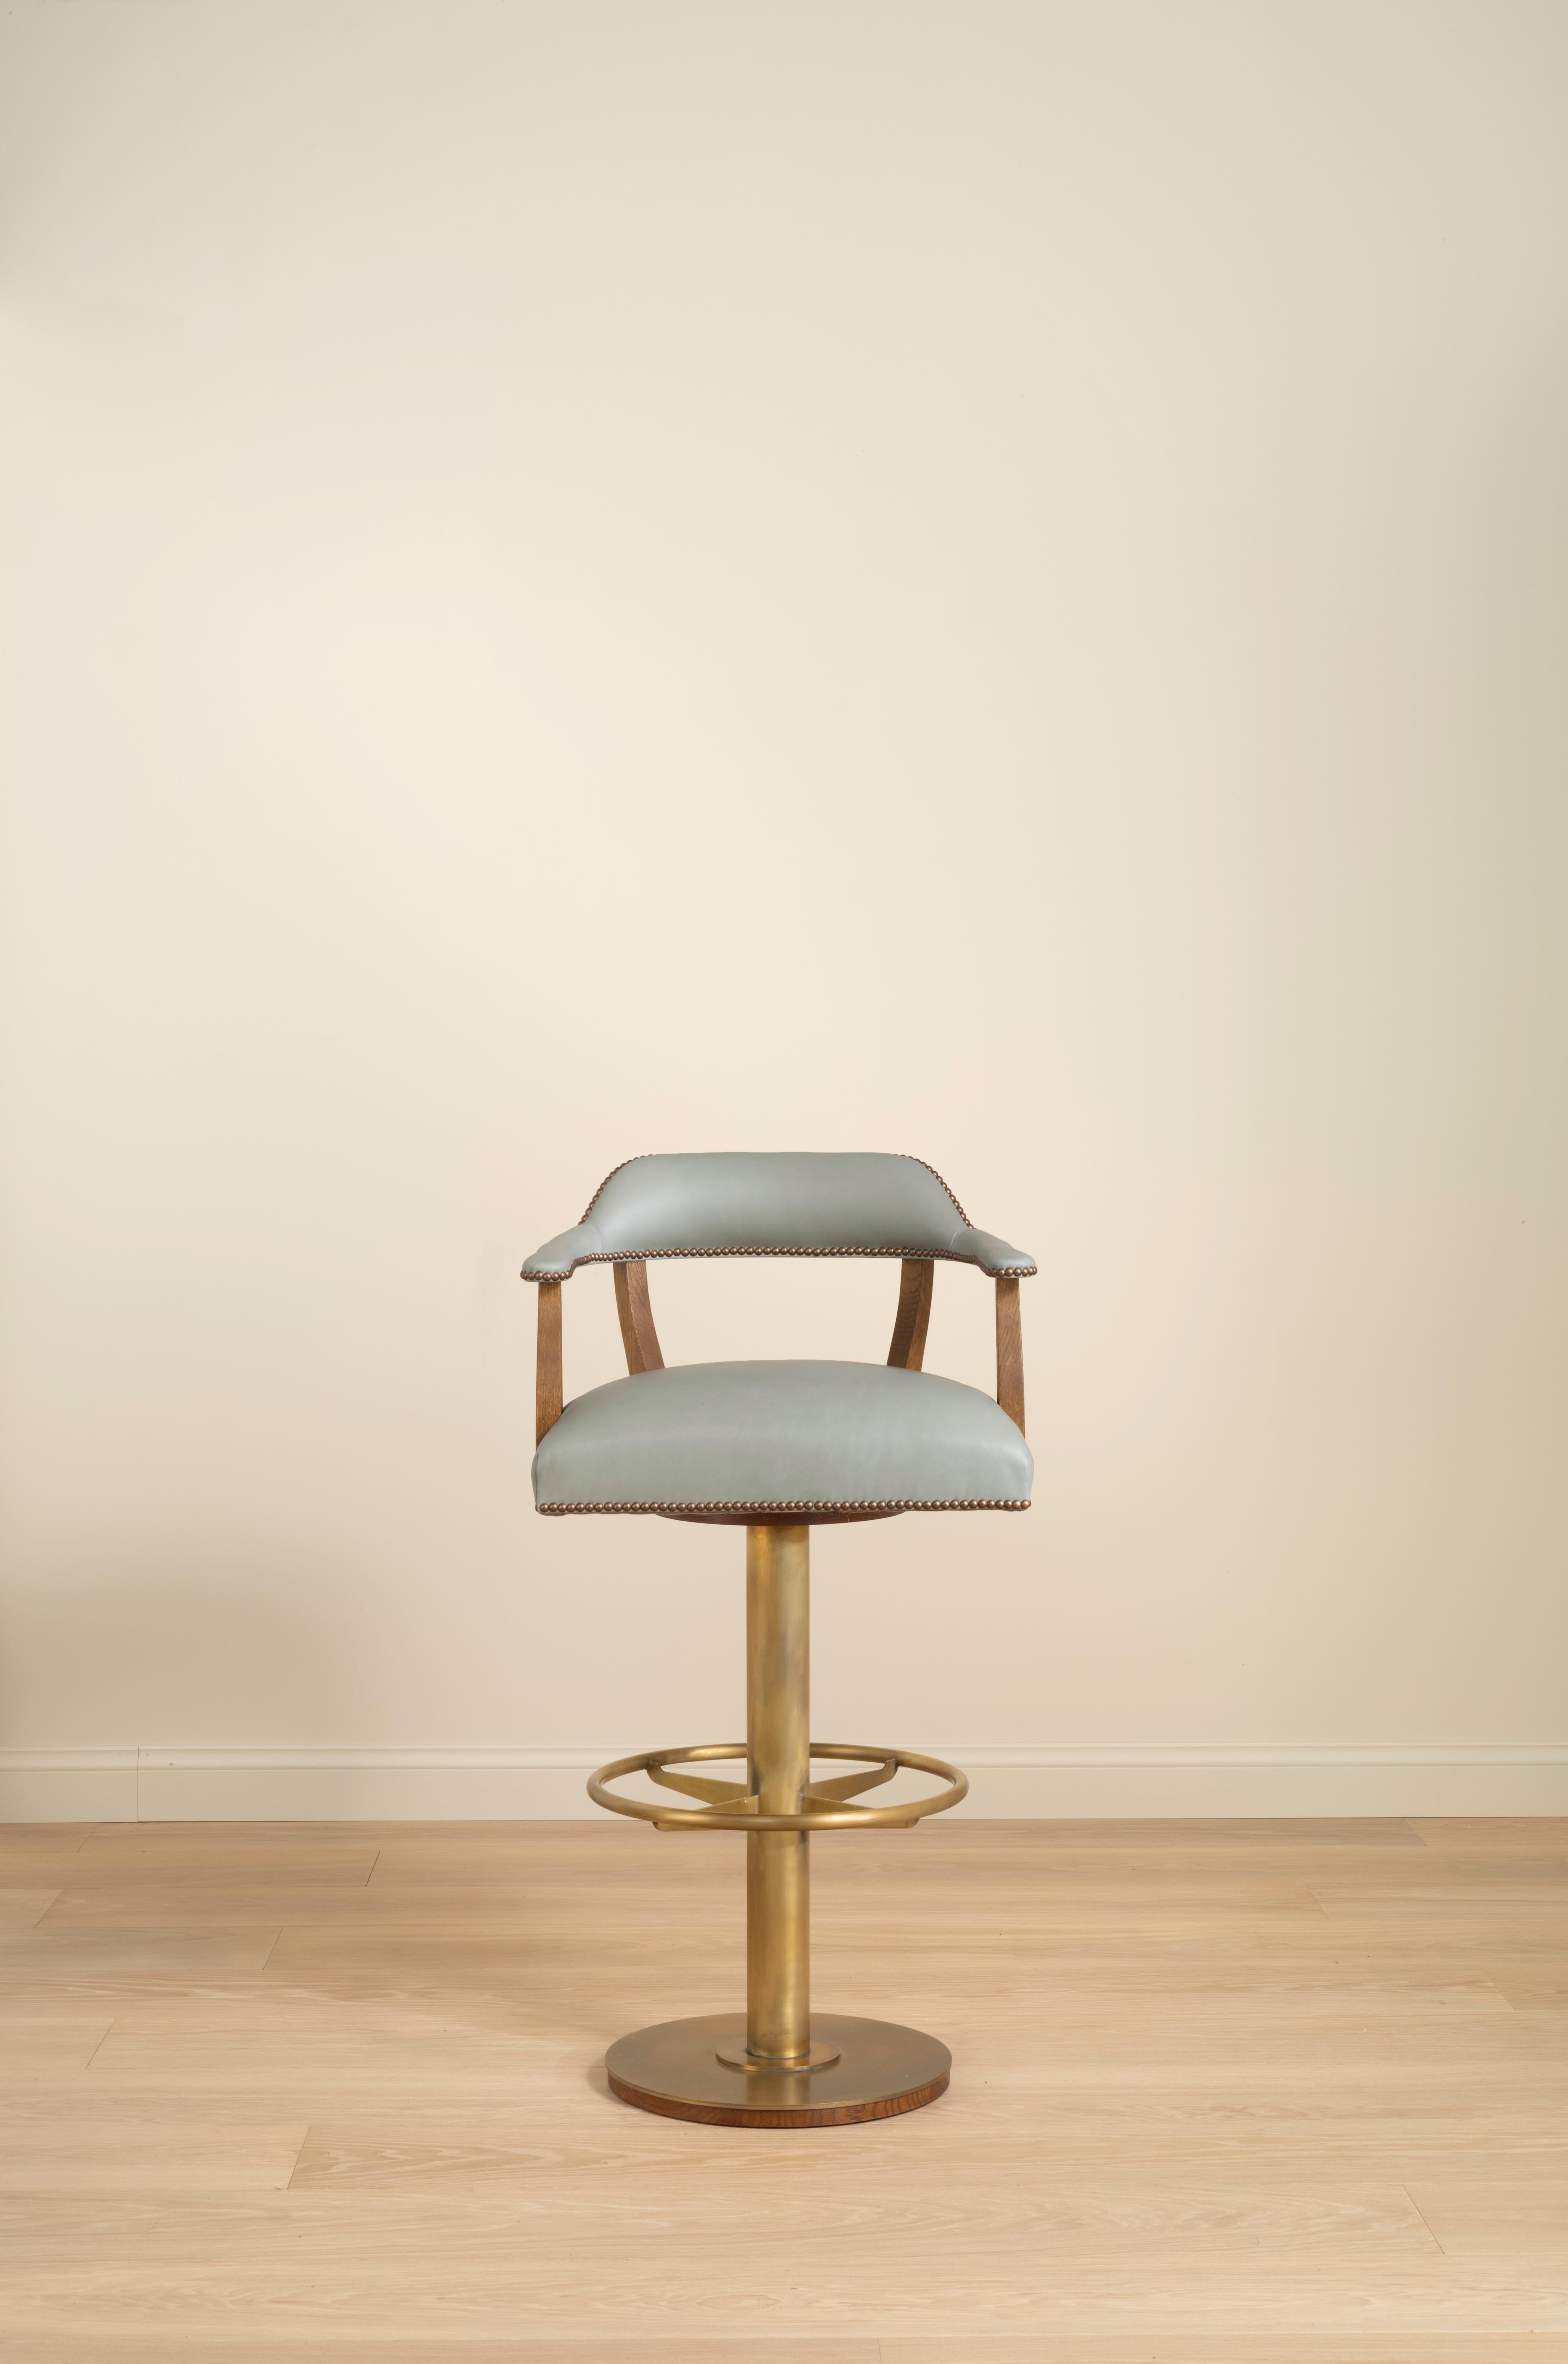 Inspiriert von unserem Croft-Stuhl wurde der Croft-Barhocker entwickelt, um dem Design Vielseitigkeit zu verleihen, so dass die Raffinesse der Oberflächen und der maßgeschneiderten Polsterung nahtlos vom Esszimmer in die Bar übergehen kann.